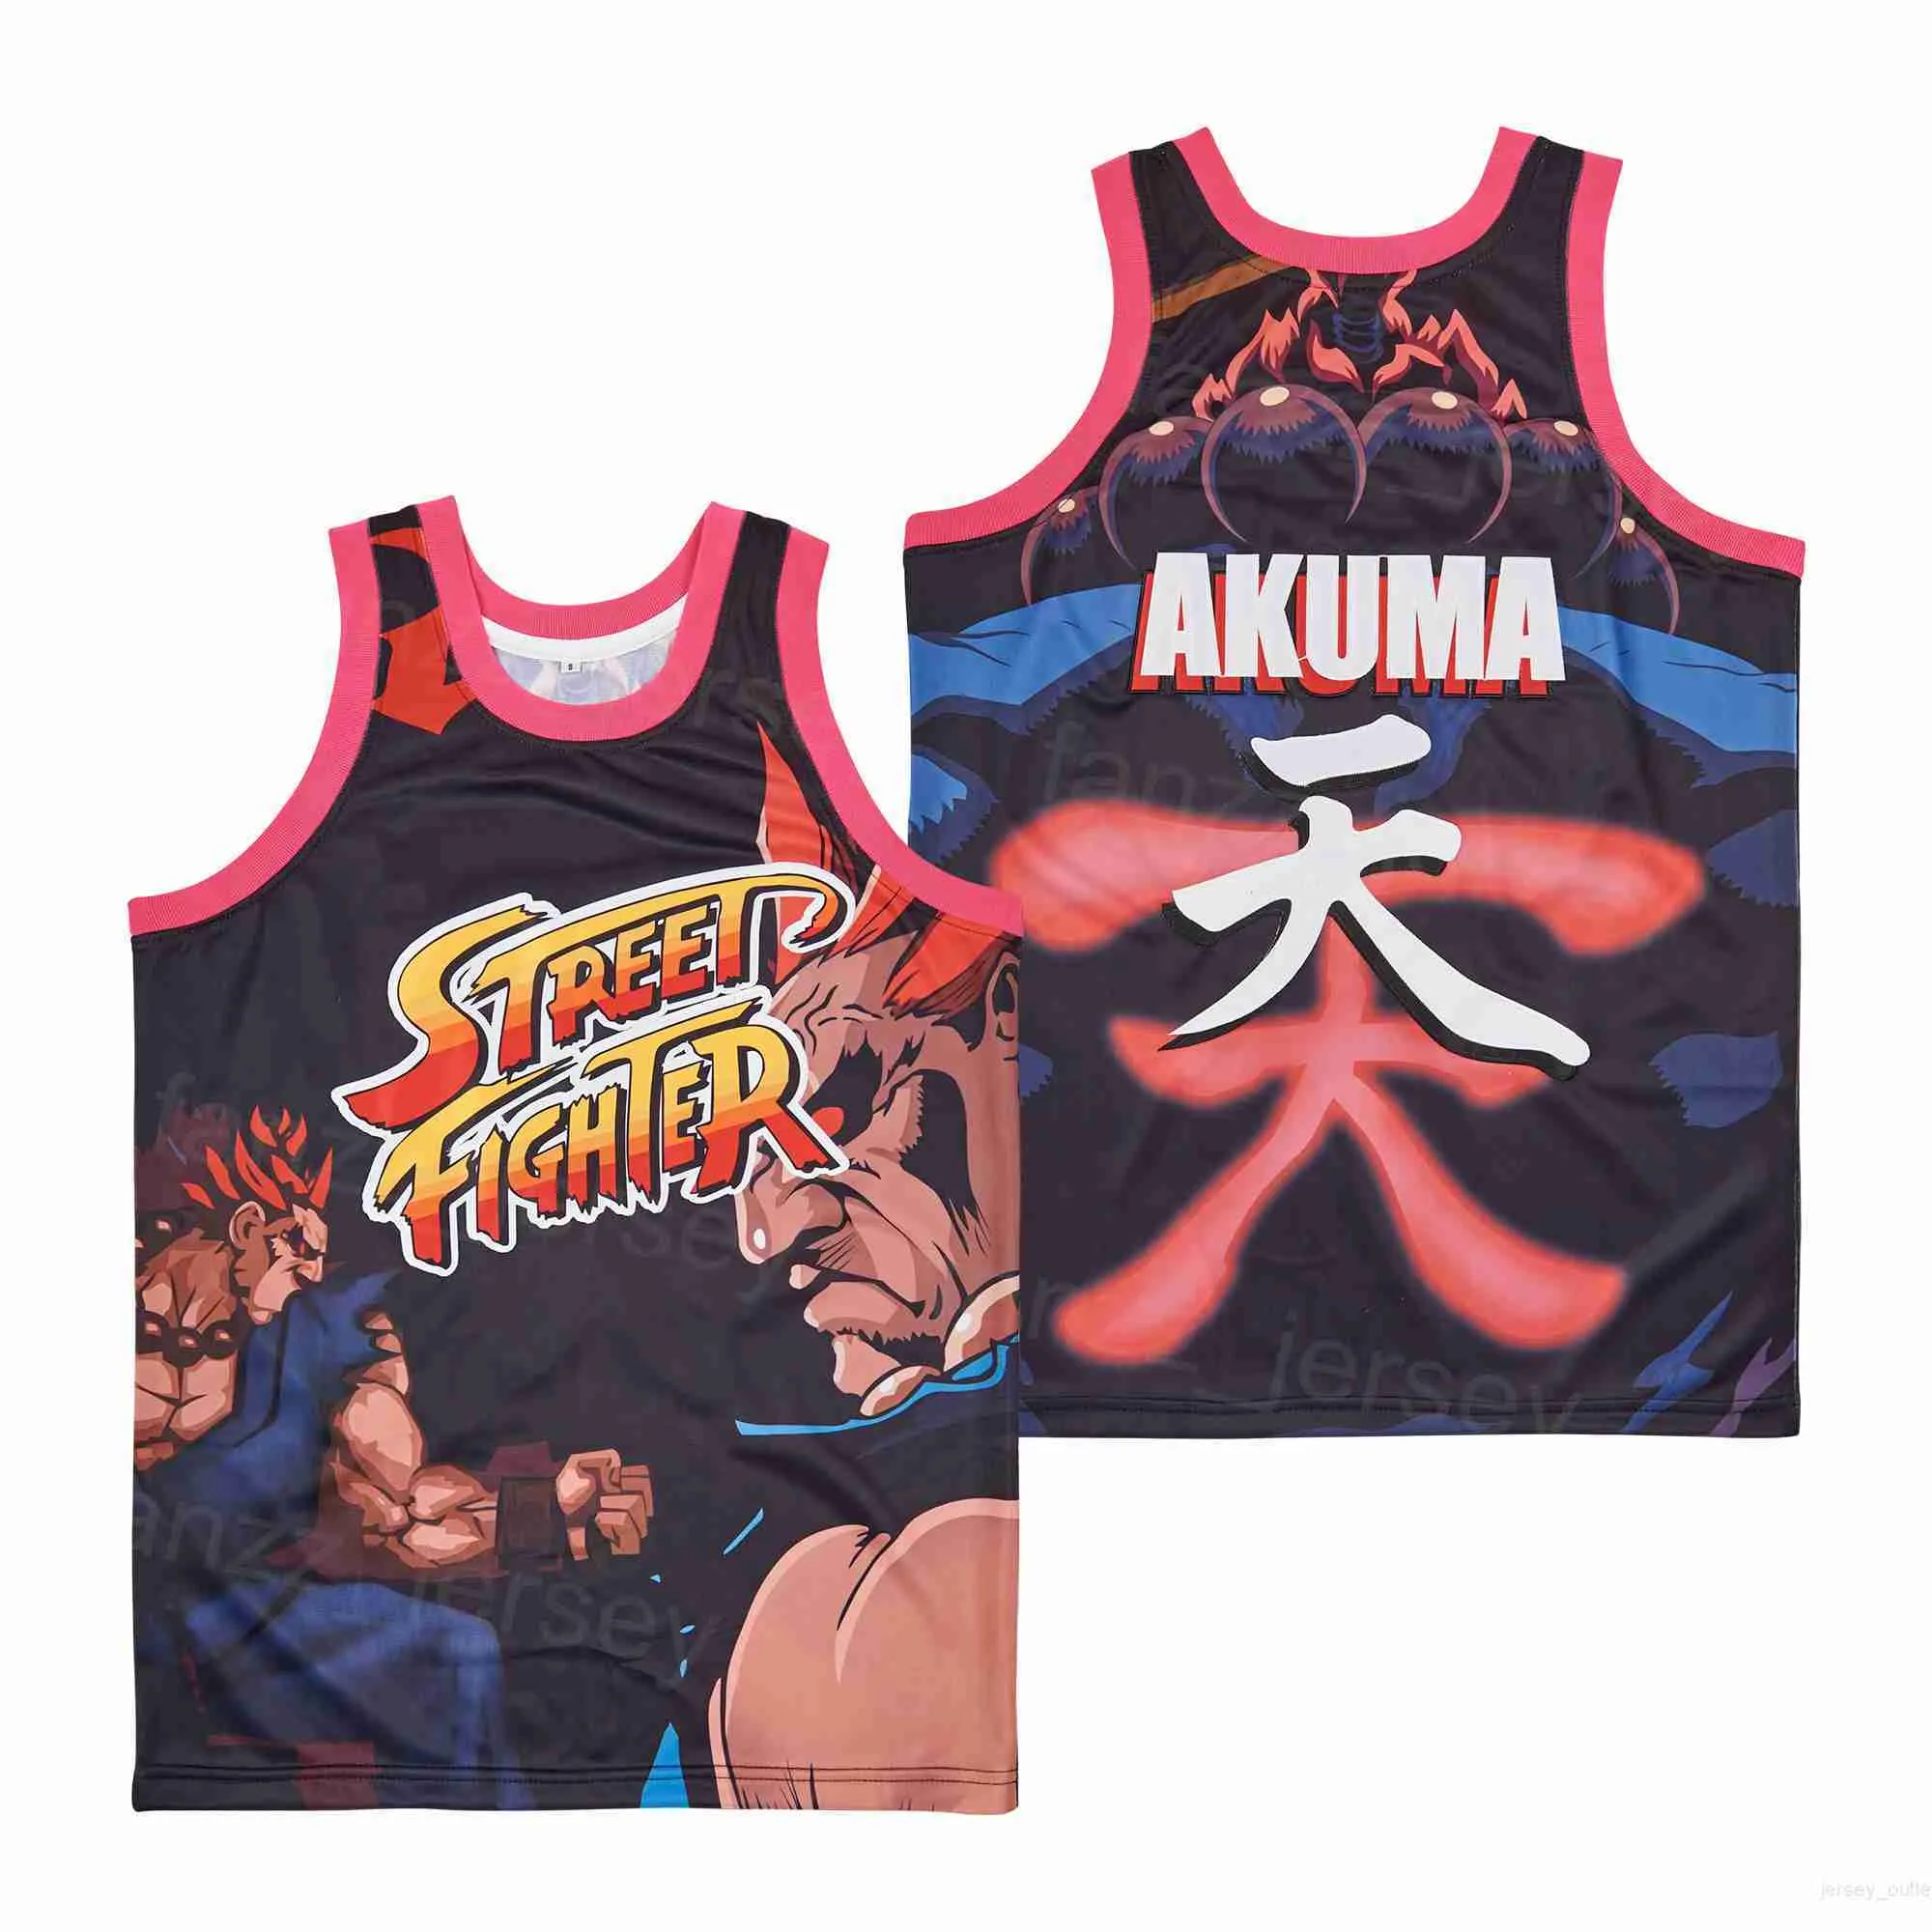 Film Akuma Street Fighter Maglie per videogiochi Film Basketball Retro Pullover Traspirante High School College HipHop Puro cotone Sport Team Ricamo nero Buono